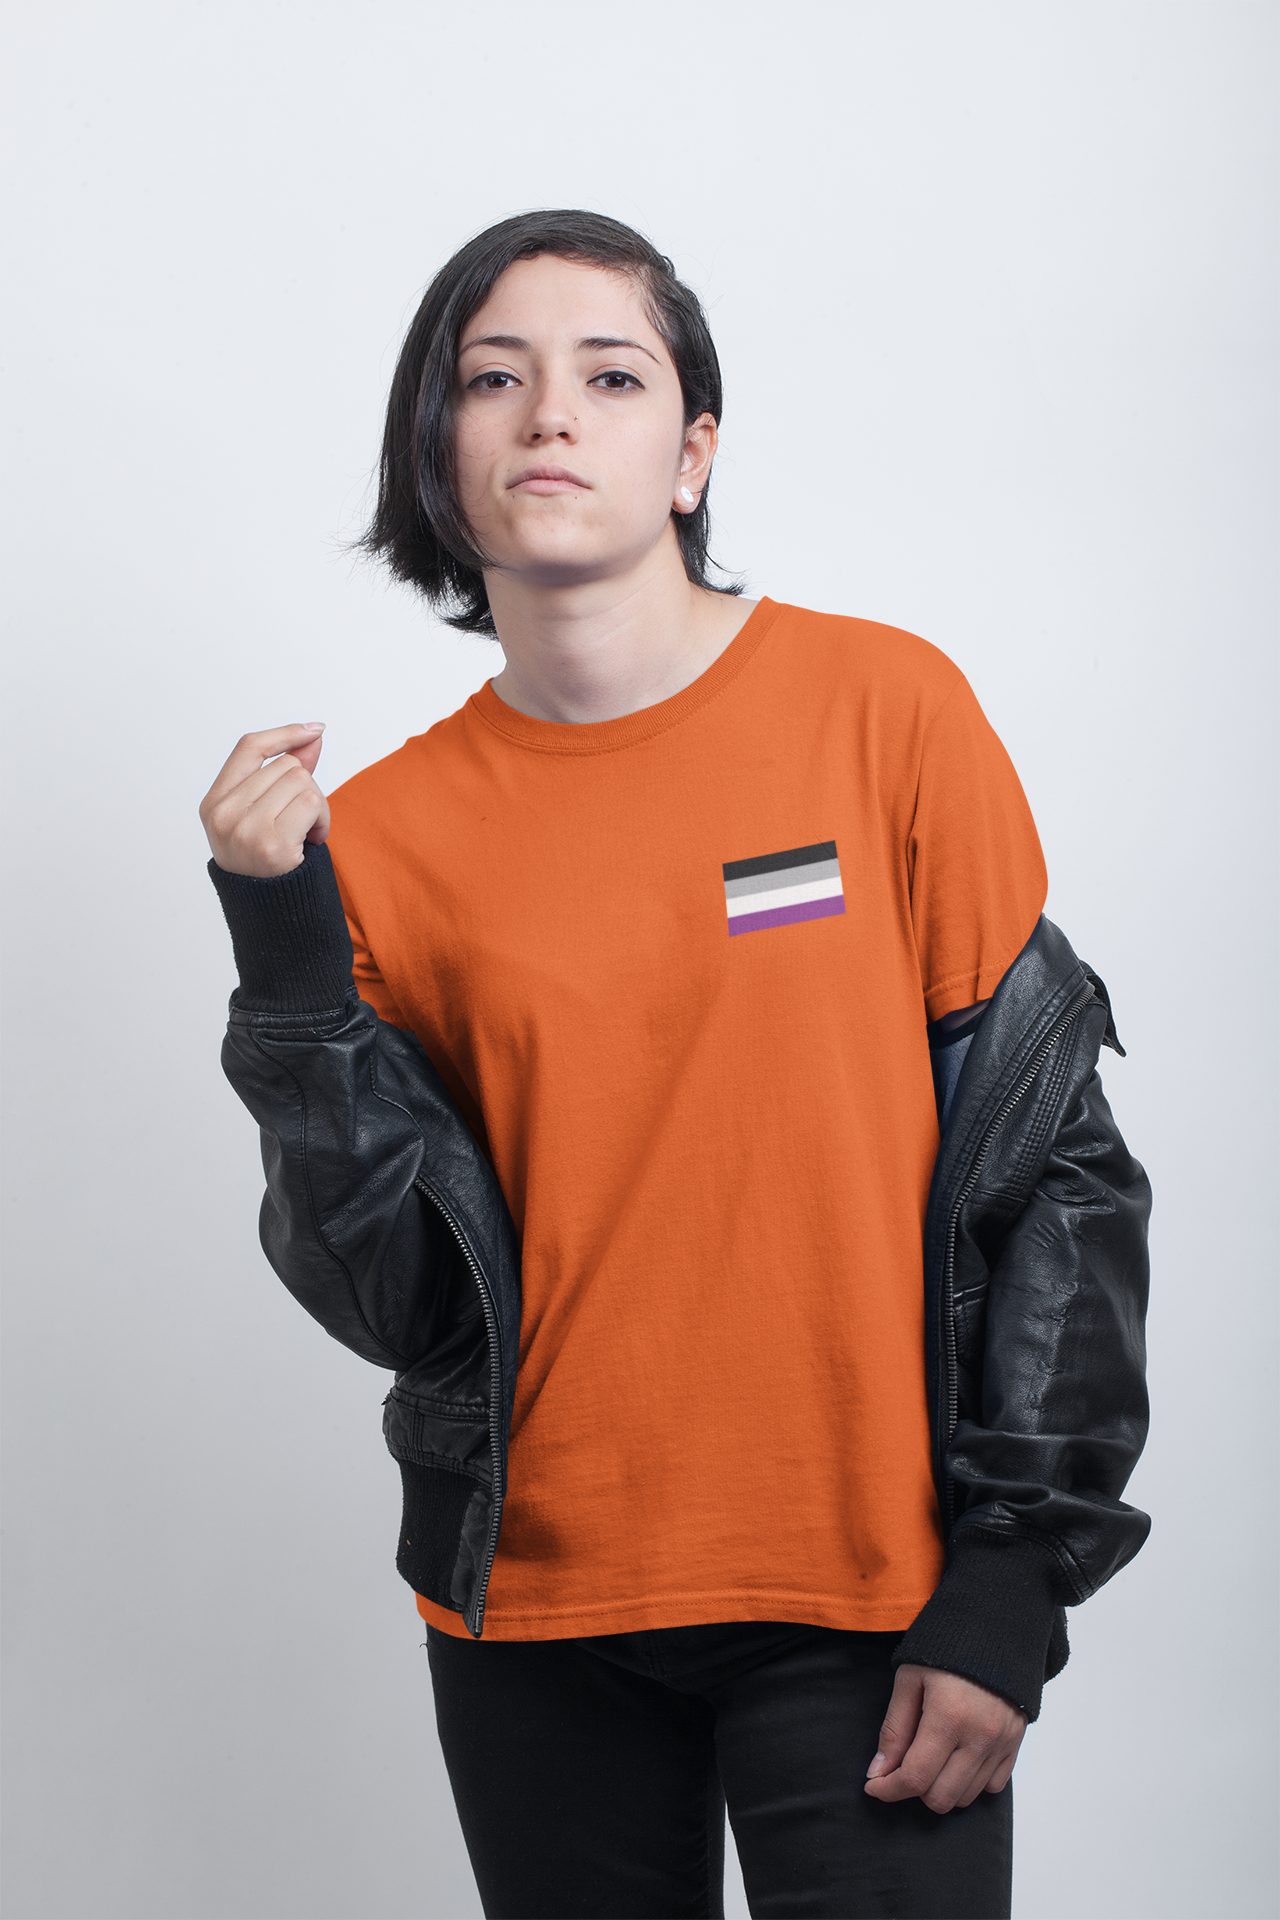 Ace Pride Flag : Unisex 100% Comfy Cotton T-Shirt by Bella+Canvas